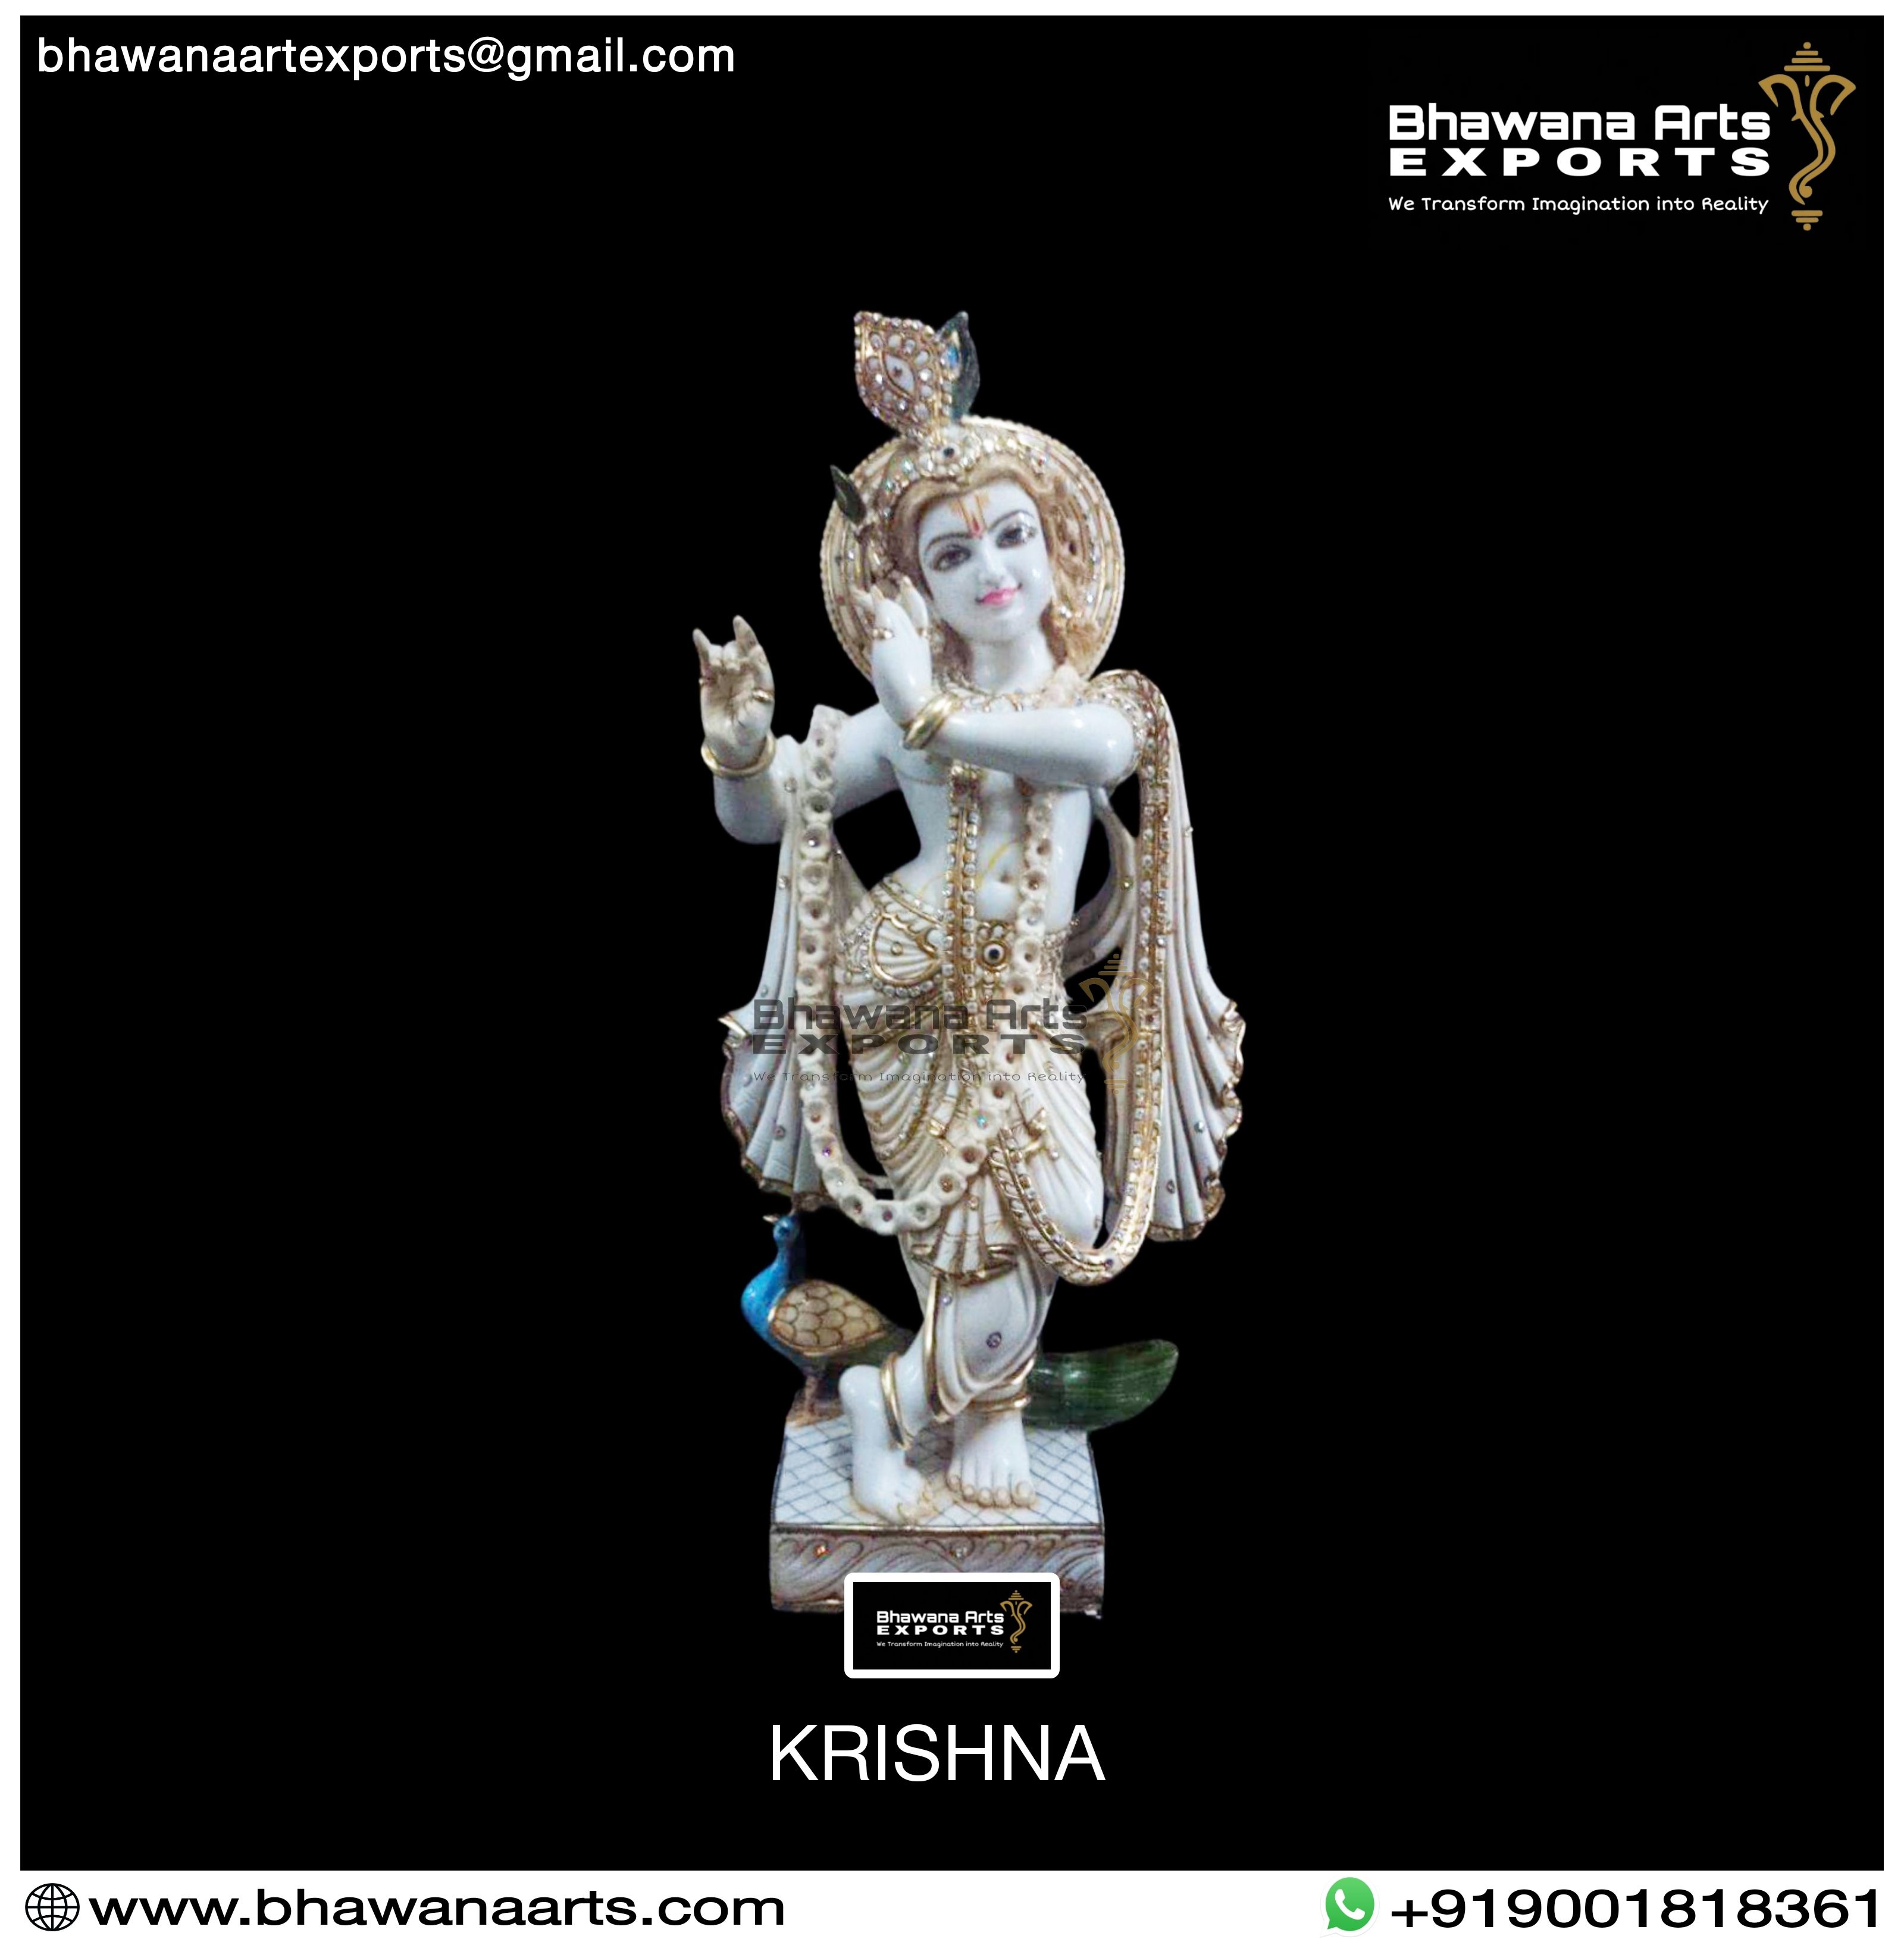 Buy Statue of Krishna online